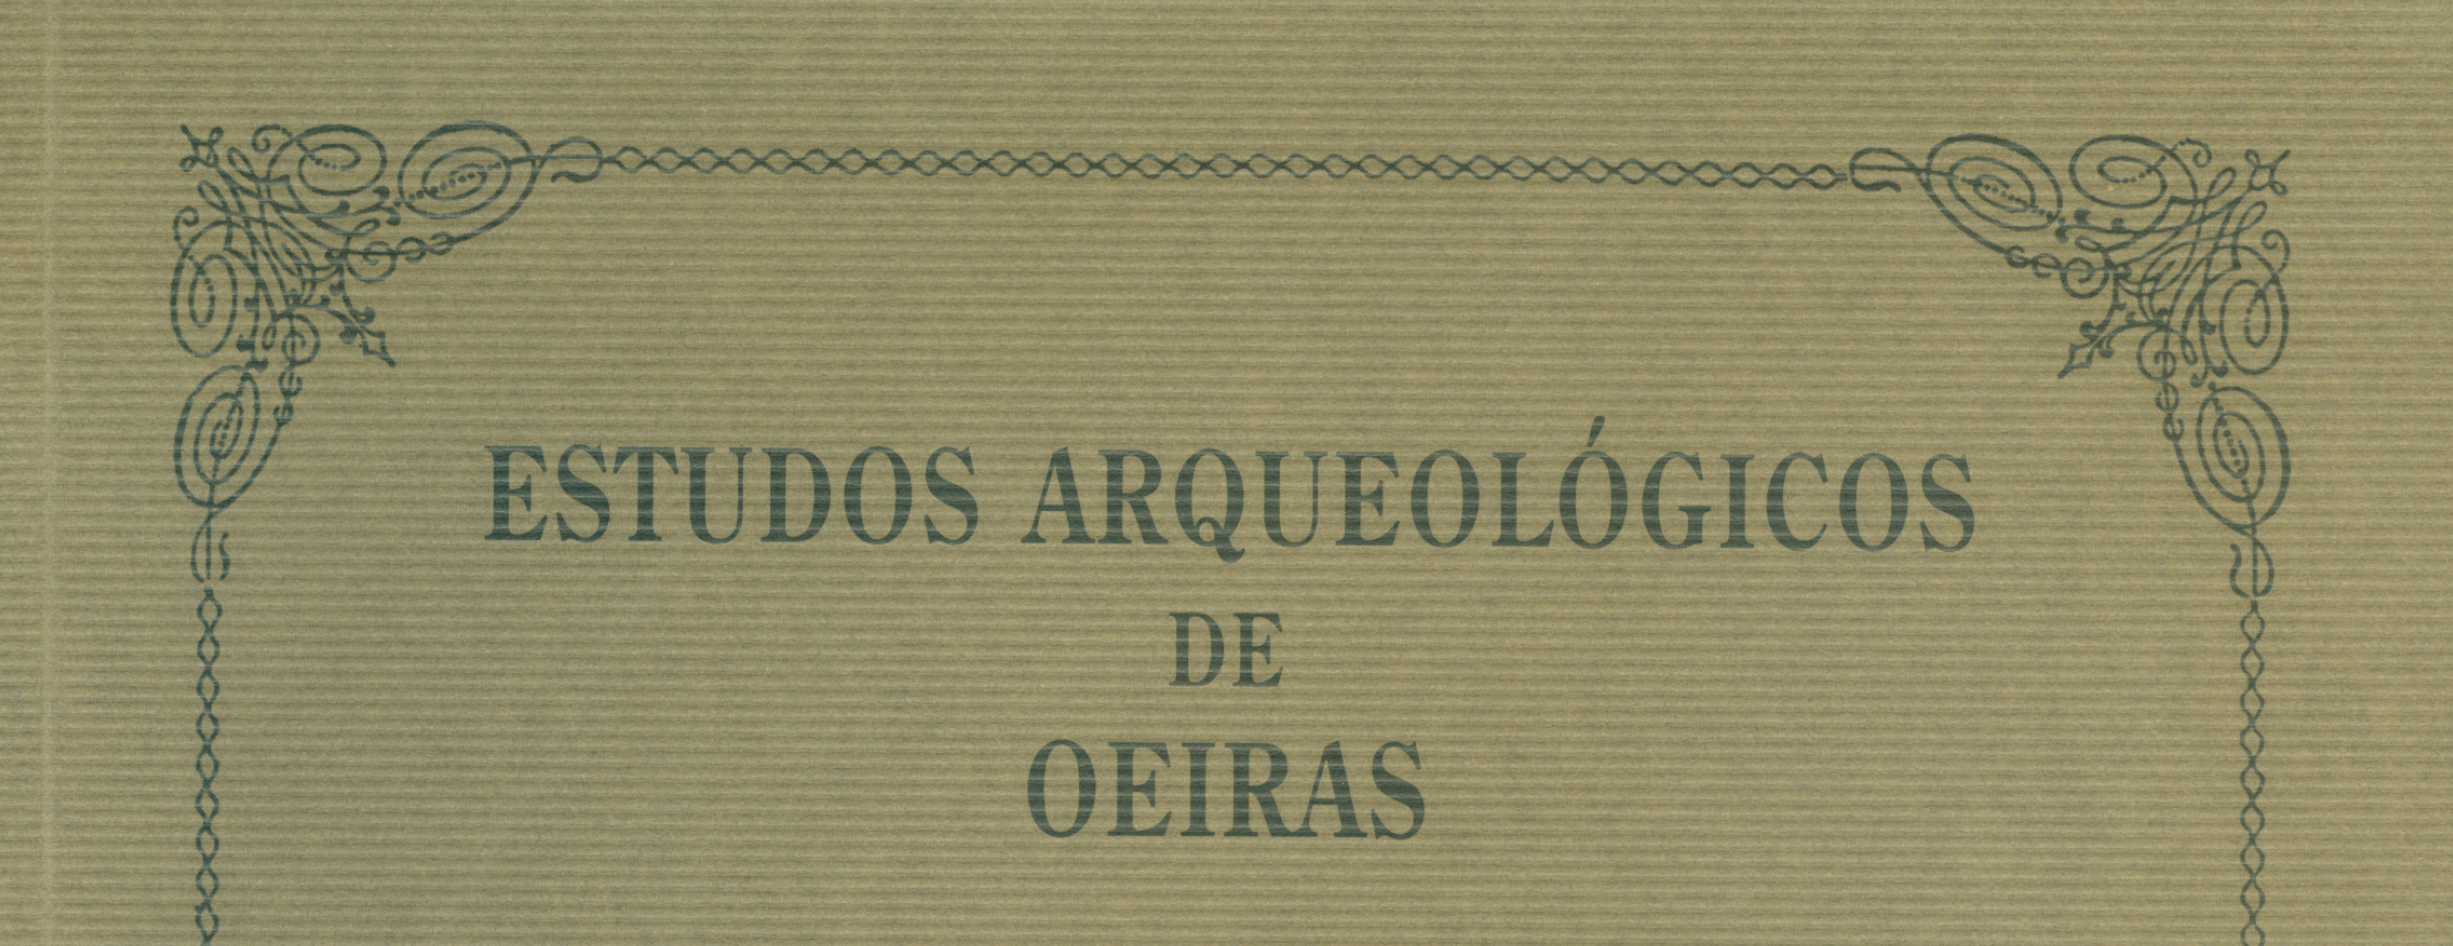 Estudos Arqueológicos de Oeiras, 11